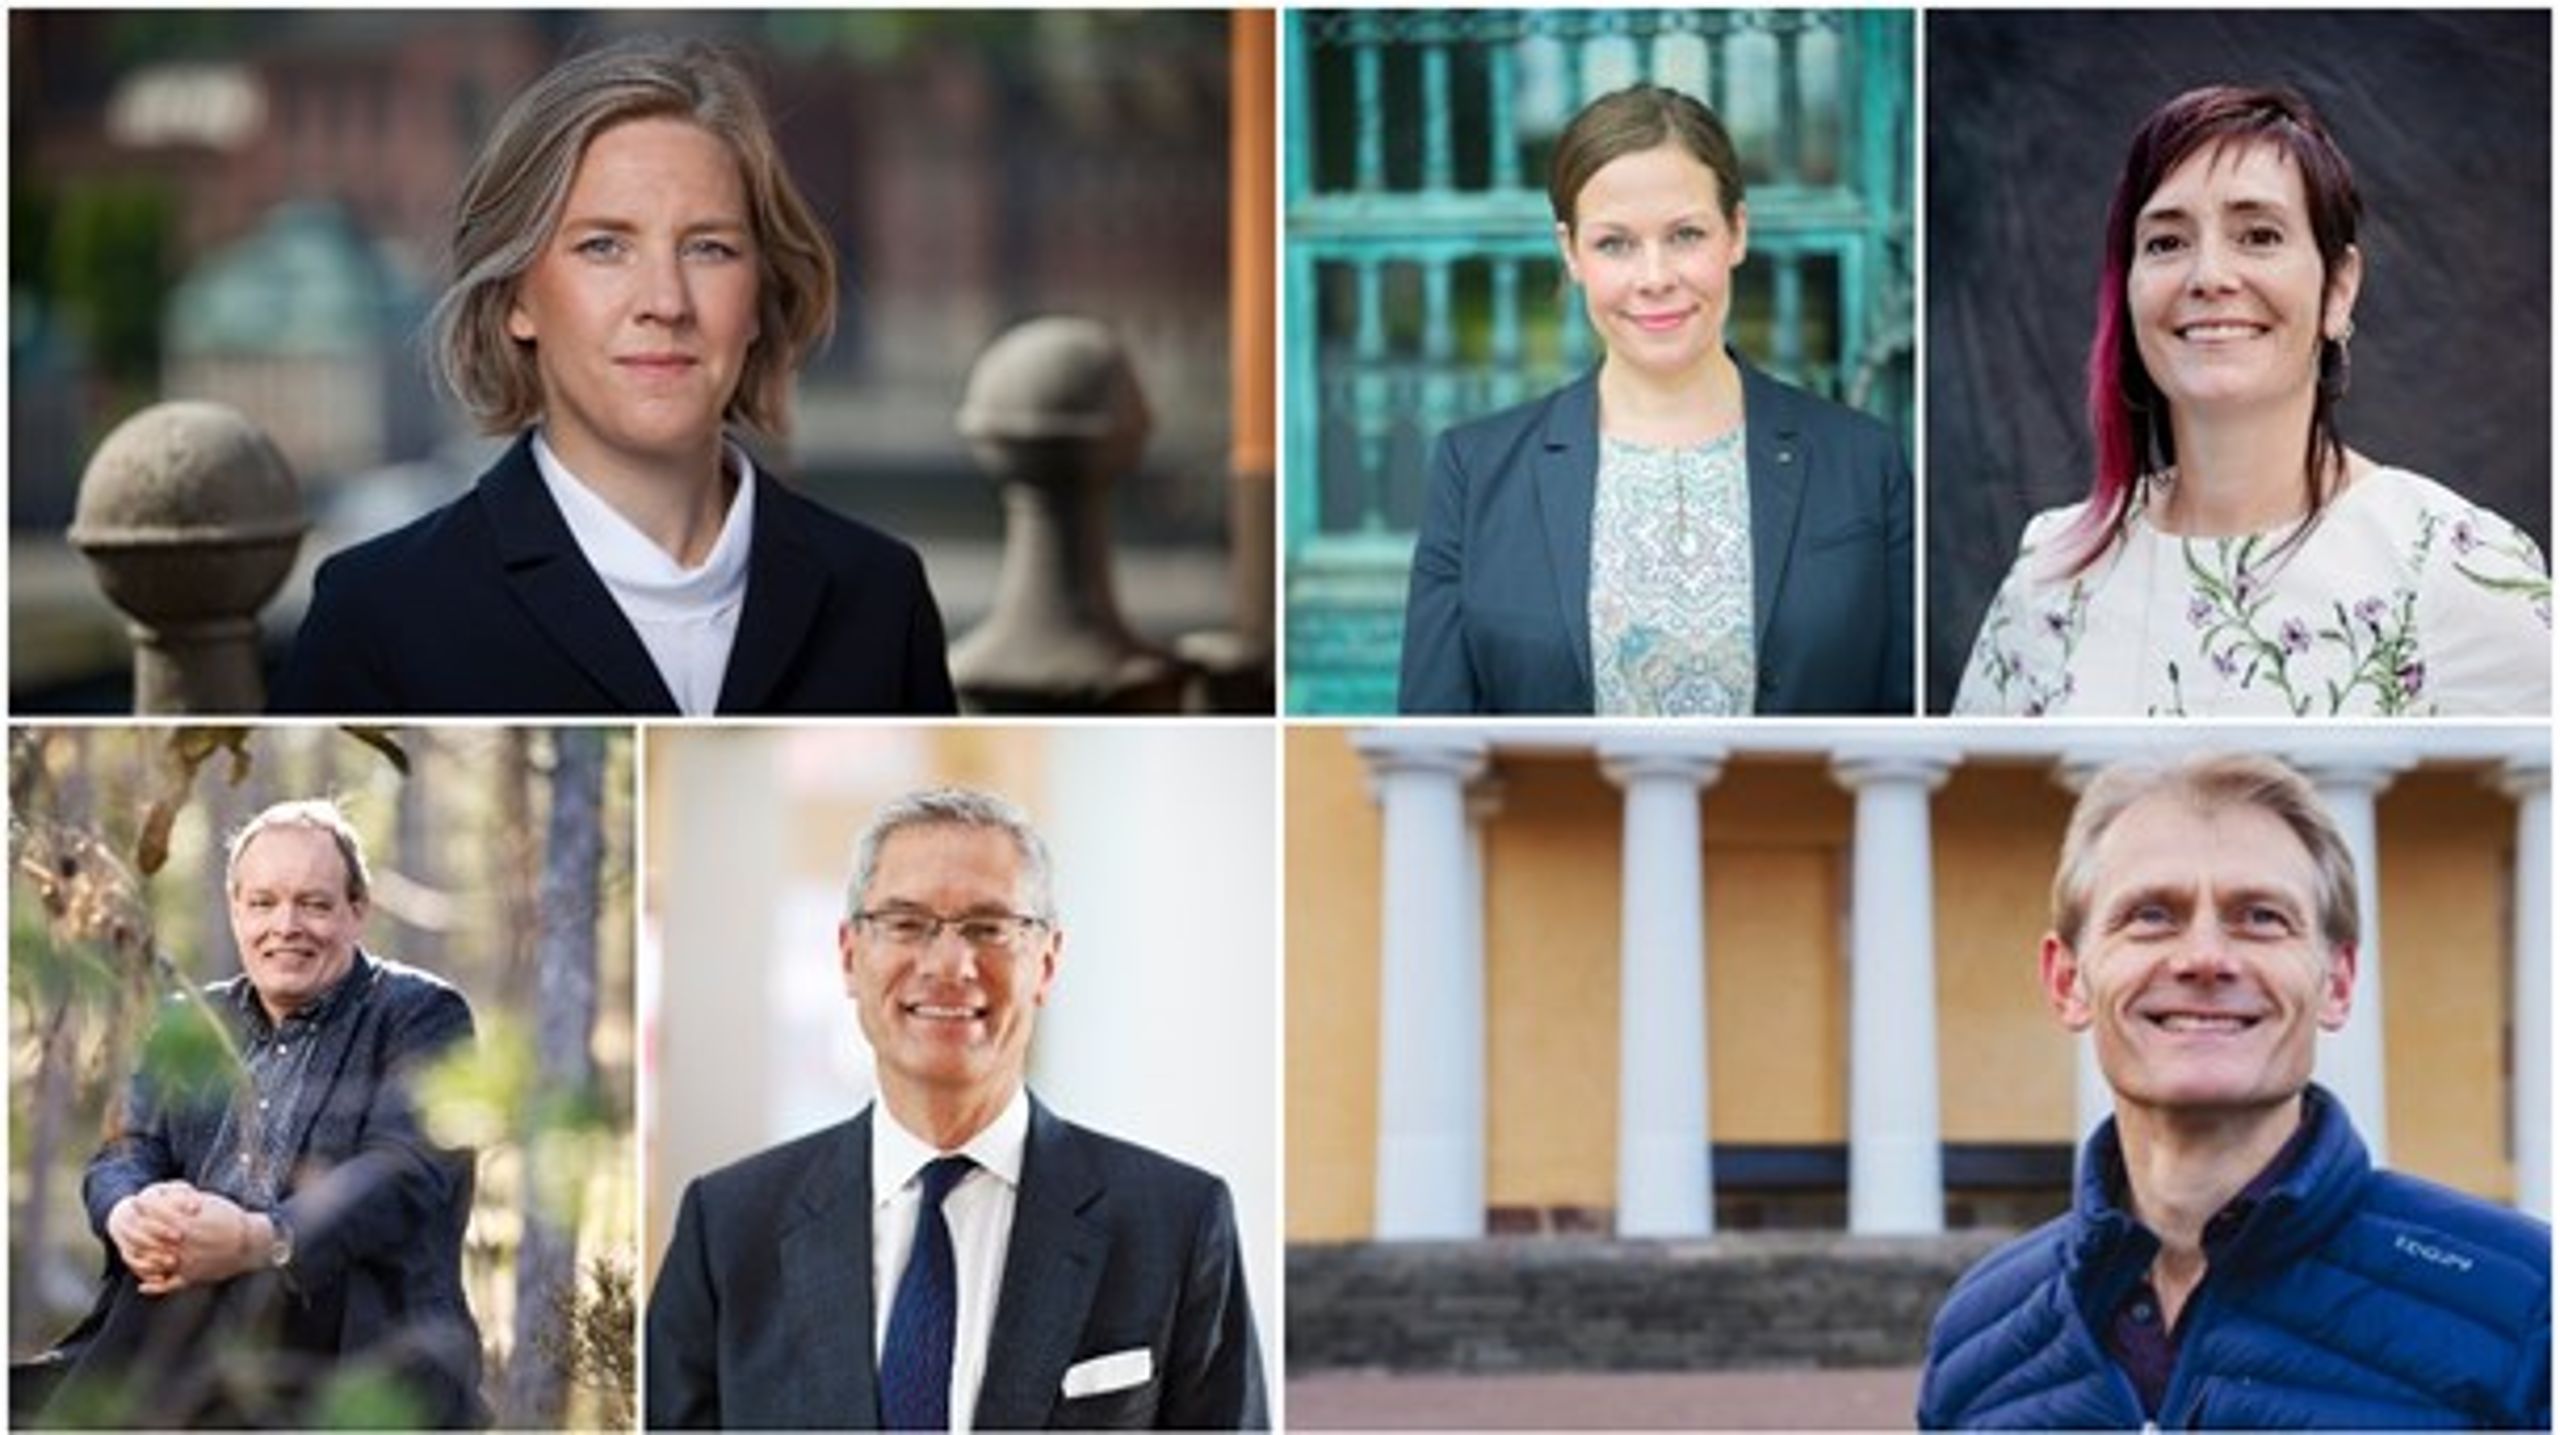 Karolina Skog, Maria Malmer-Stenergard, Åsa Hagelstedt, Björn Risinger, Magnus Hall och Kevin Anderson.